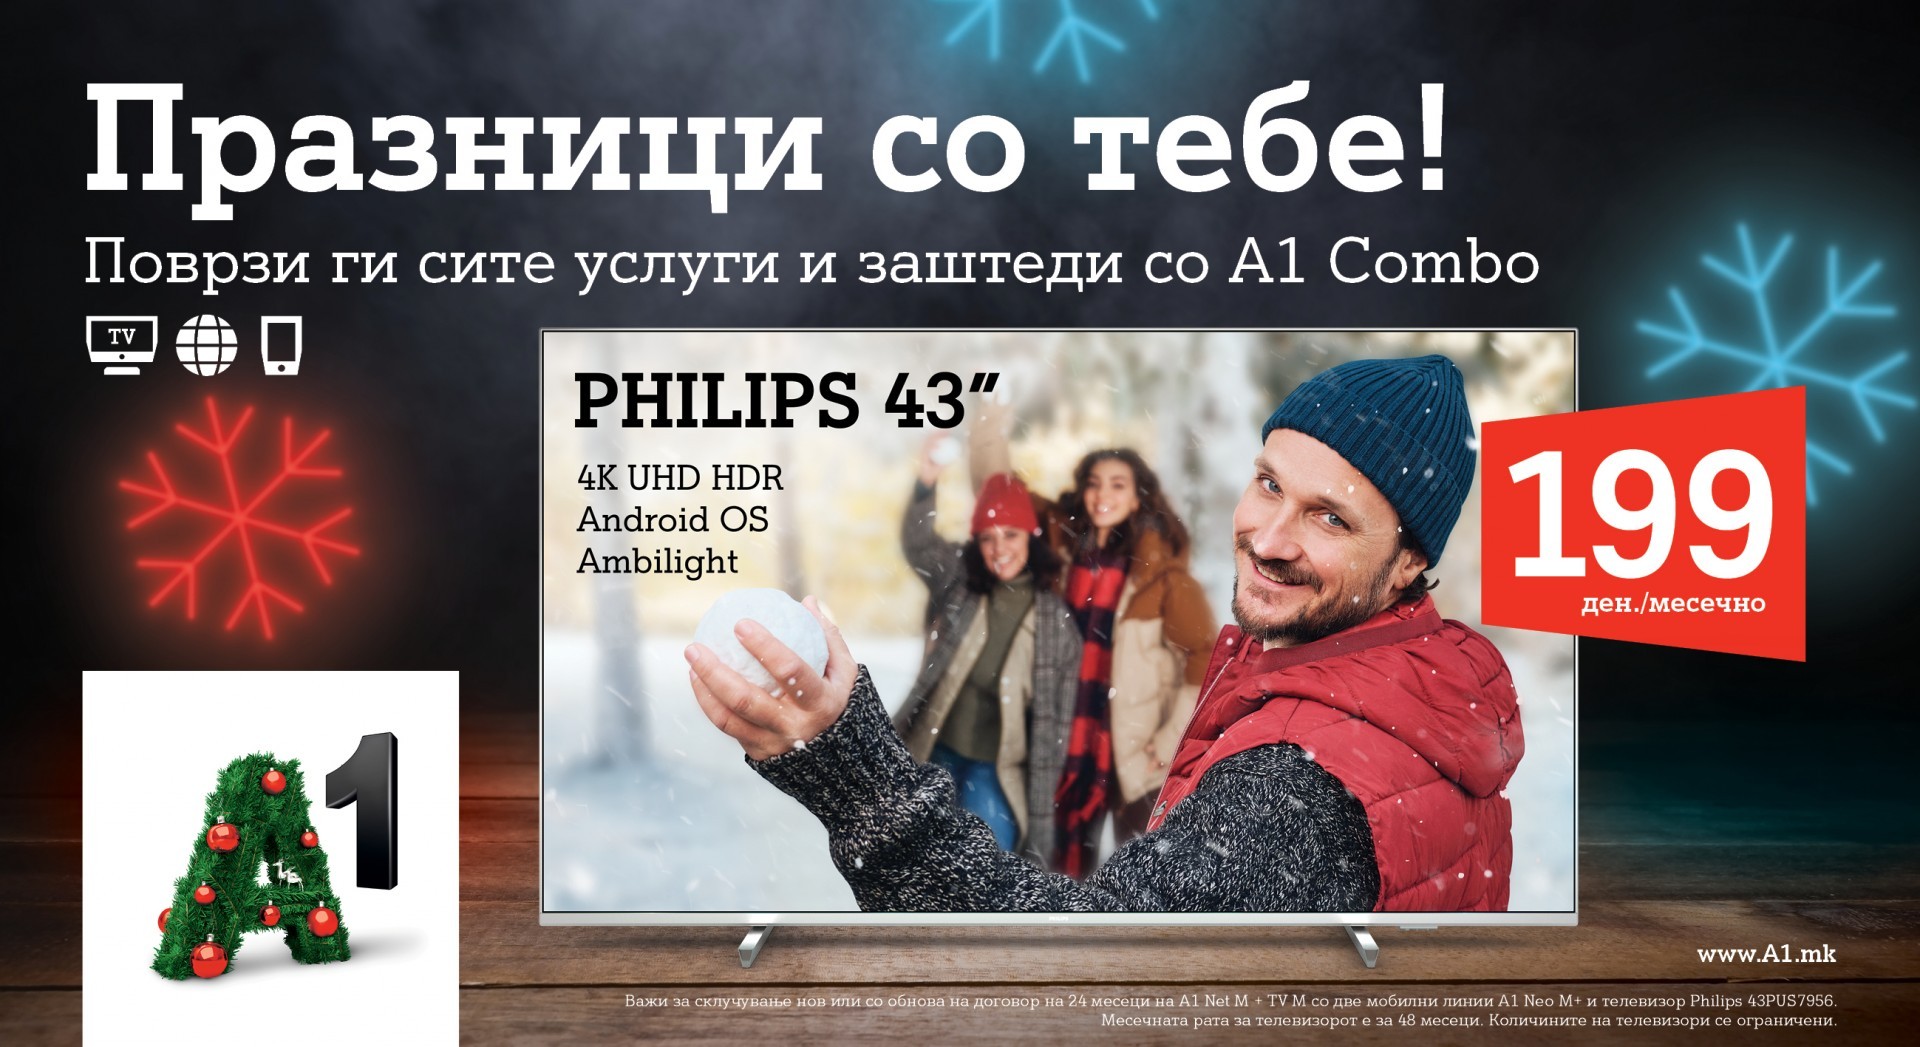 A1 Македонија за новогодишни празници со тебе - поврзани услуги и заштеда со A1 Combo